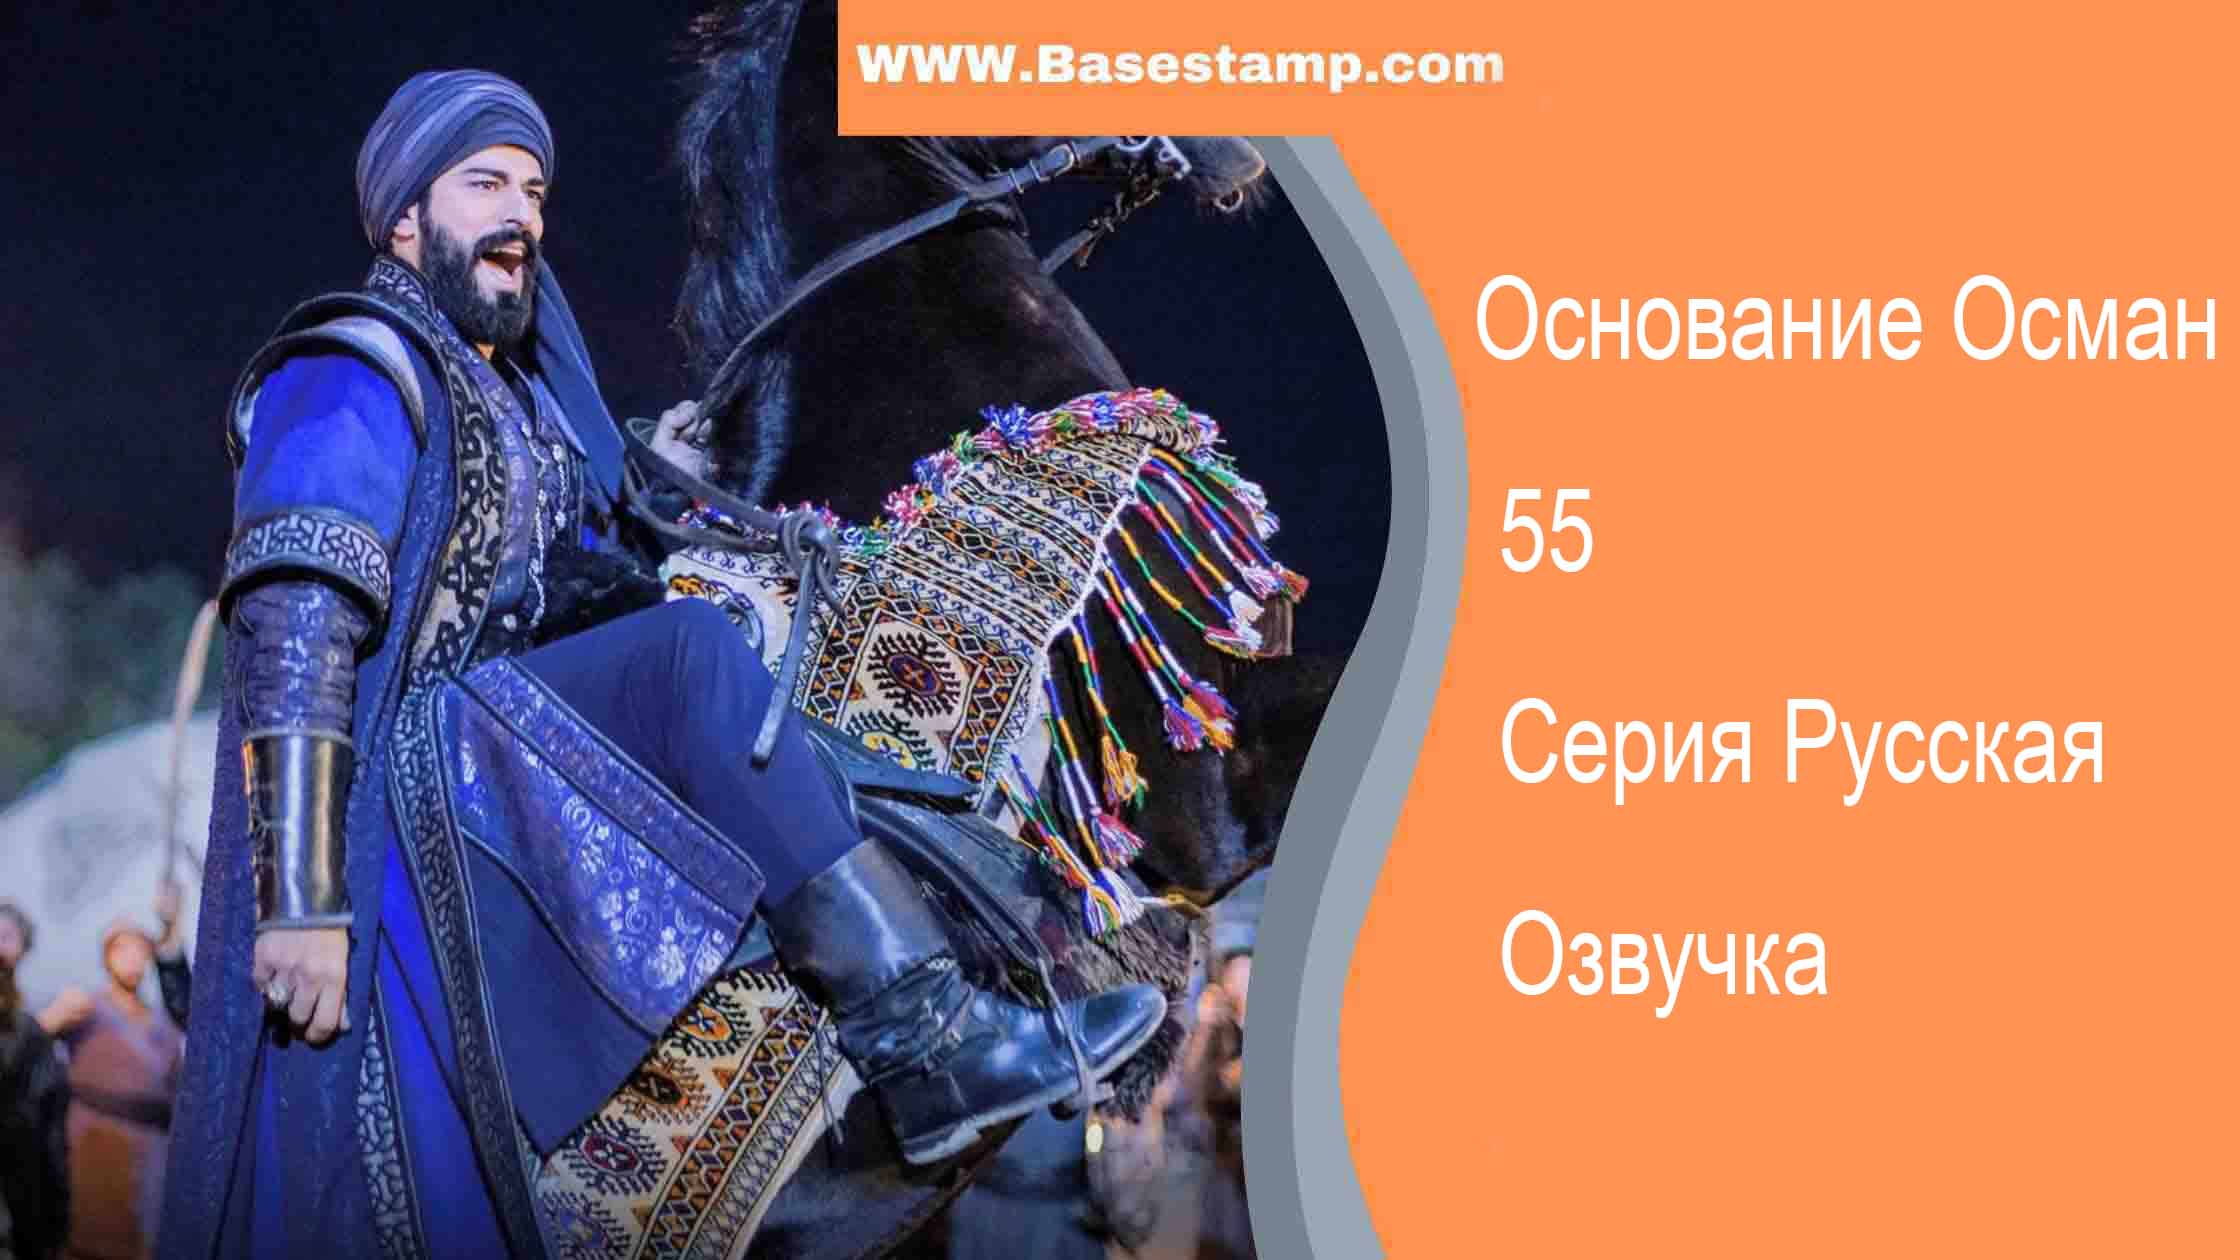 Основание Осман 55 Серия Русская Озвучка